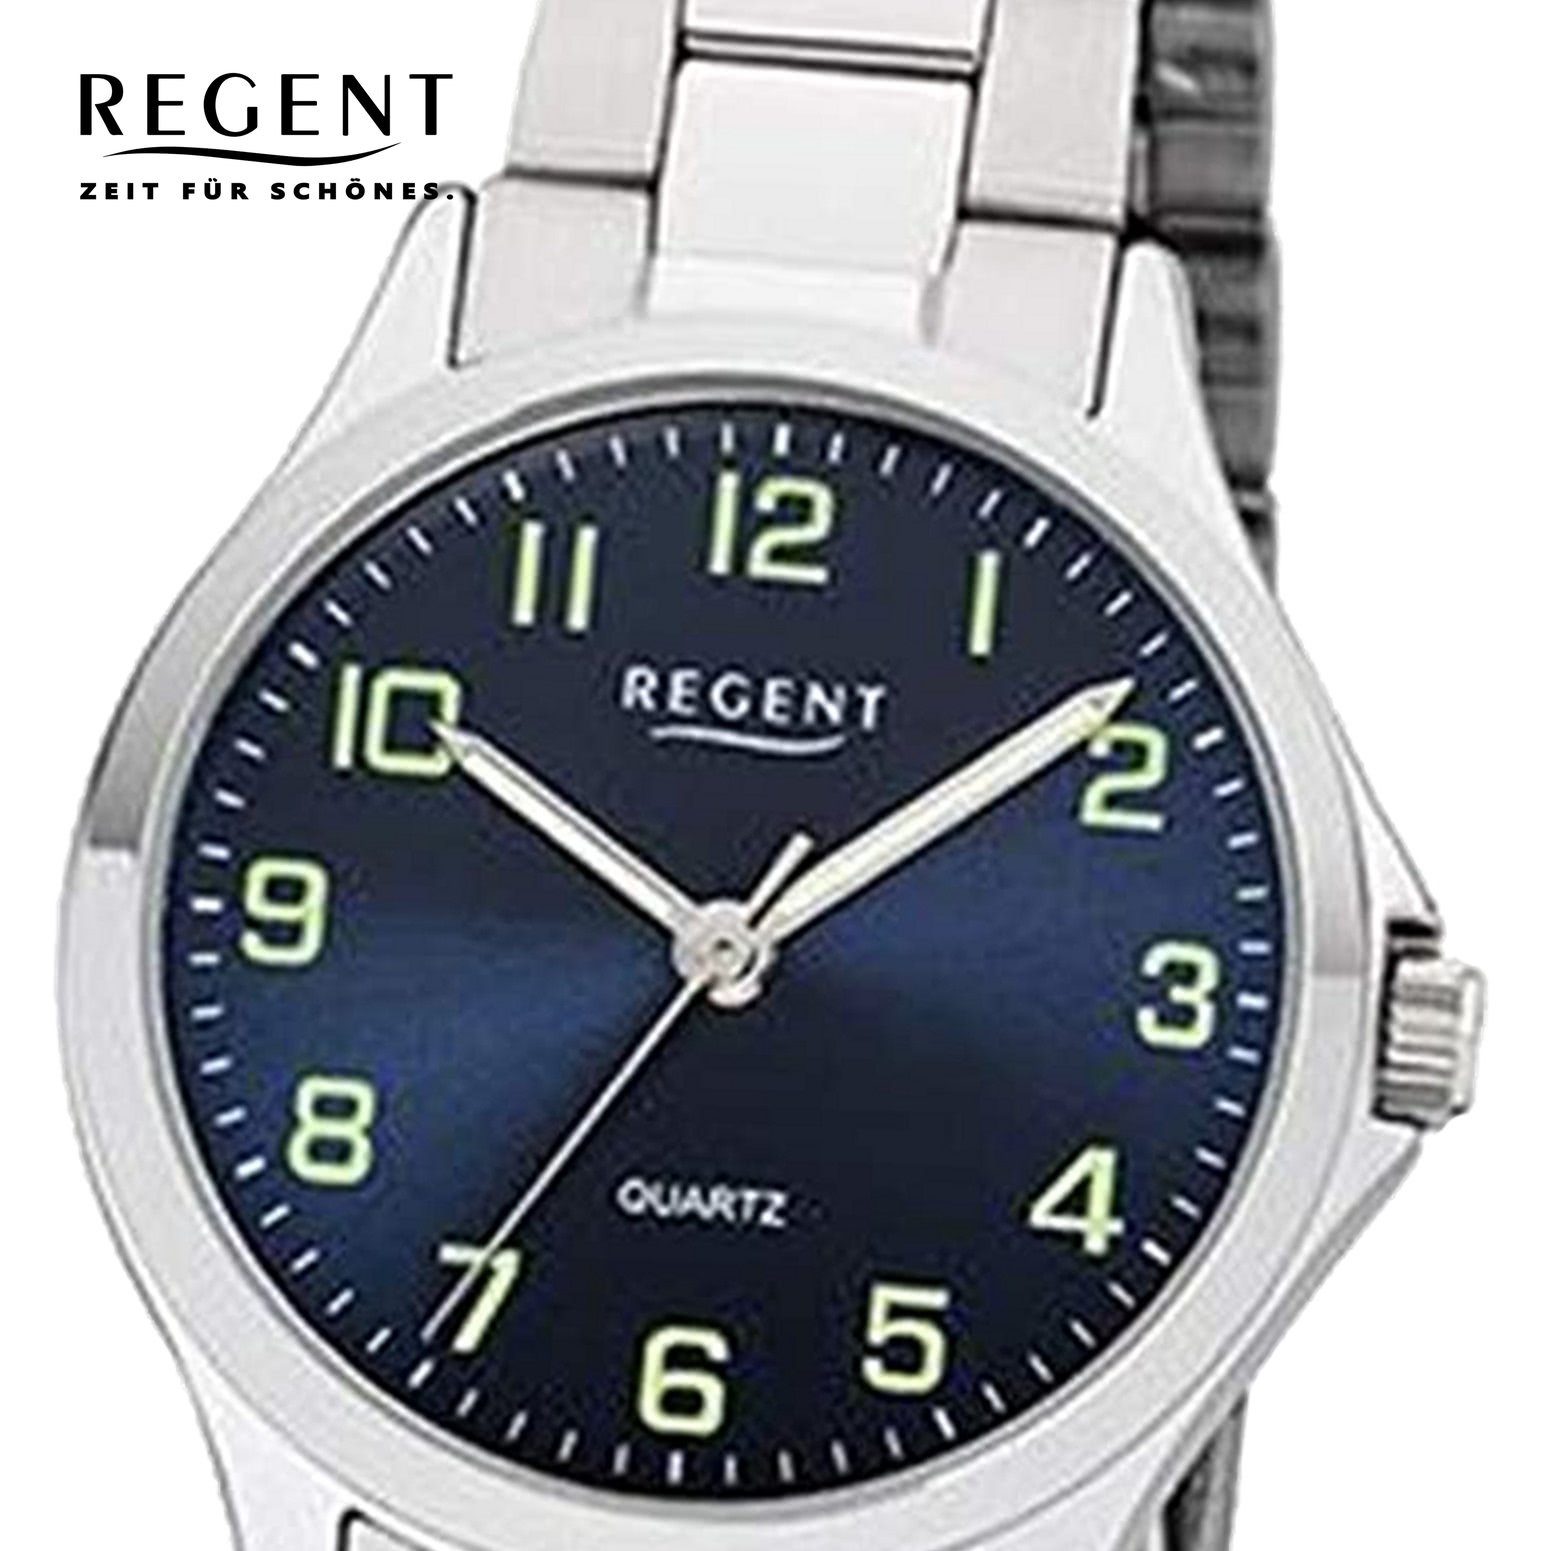 (ca. 2252407 29mm), Armbanduhr klein Damen Regent rund, Metallarmband Regent Metall Quarz, Damen Quarzuhr Uhr